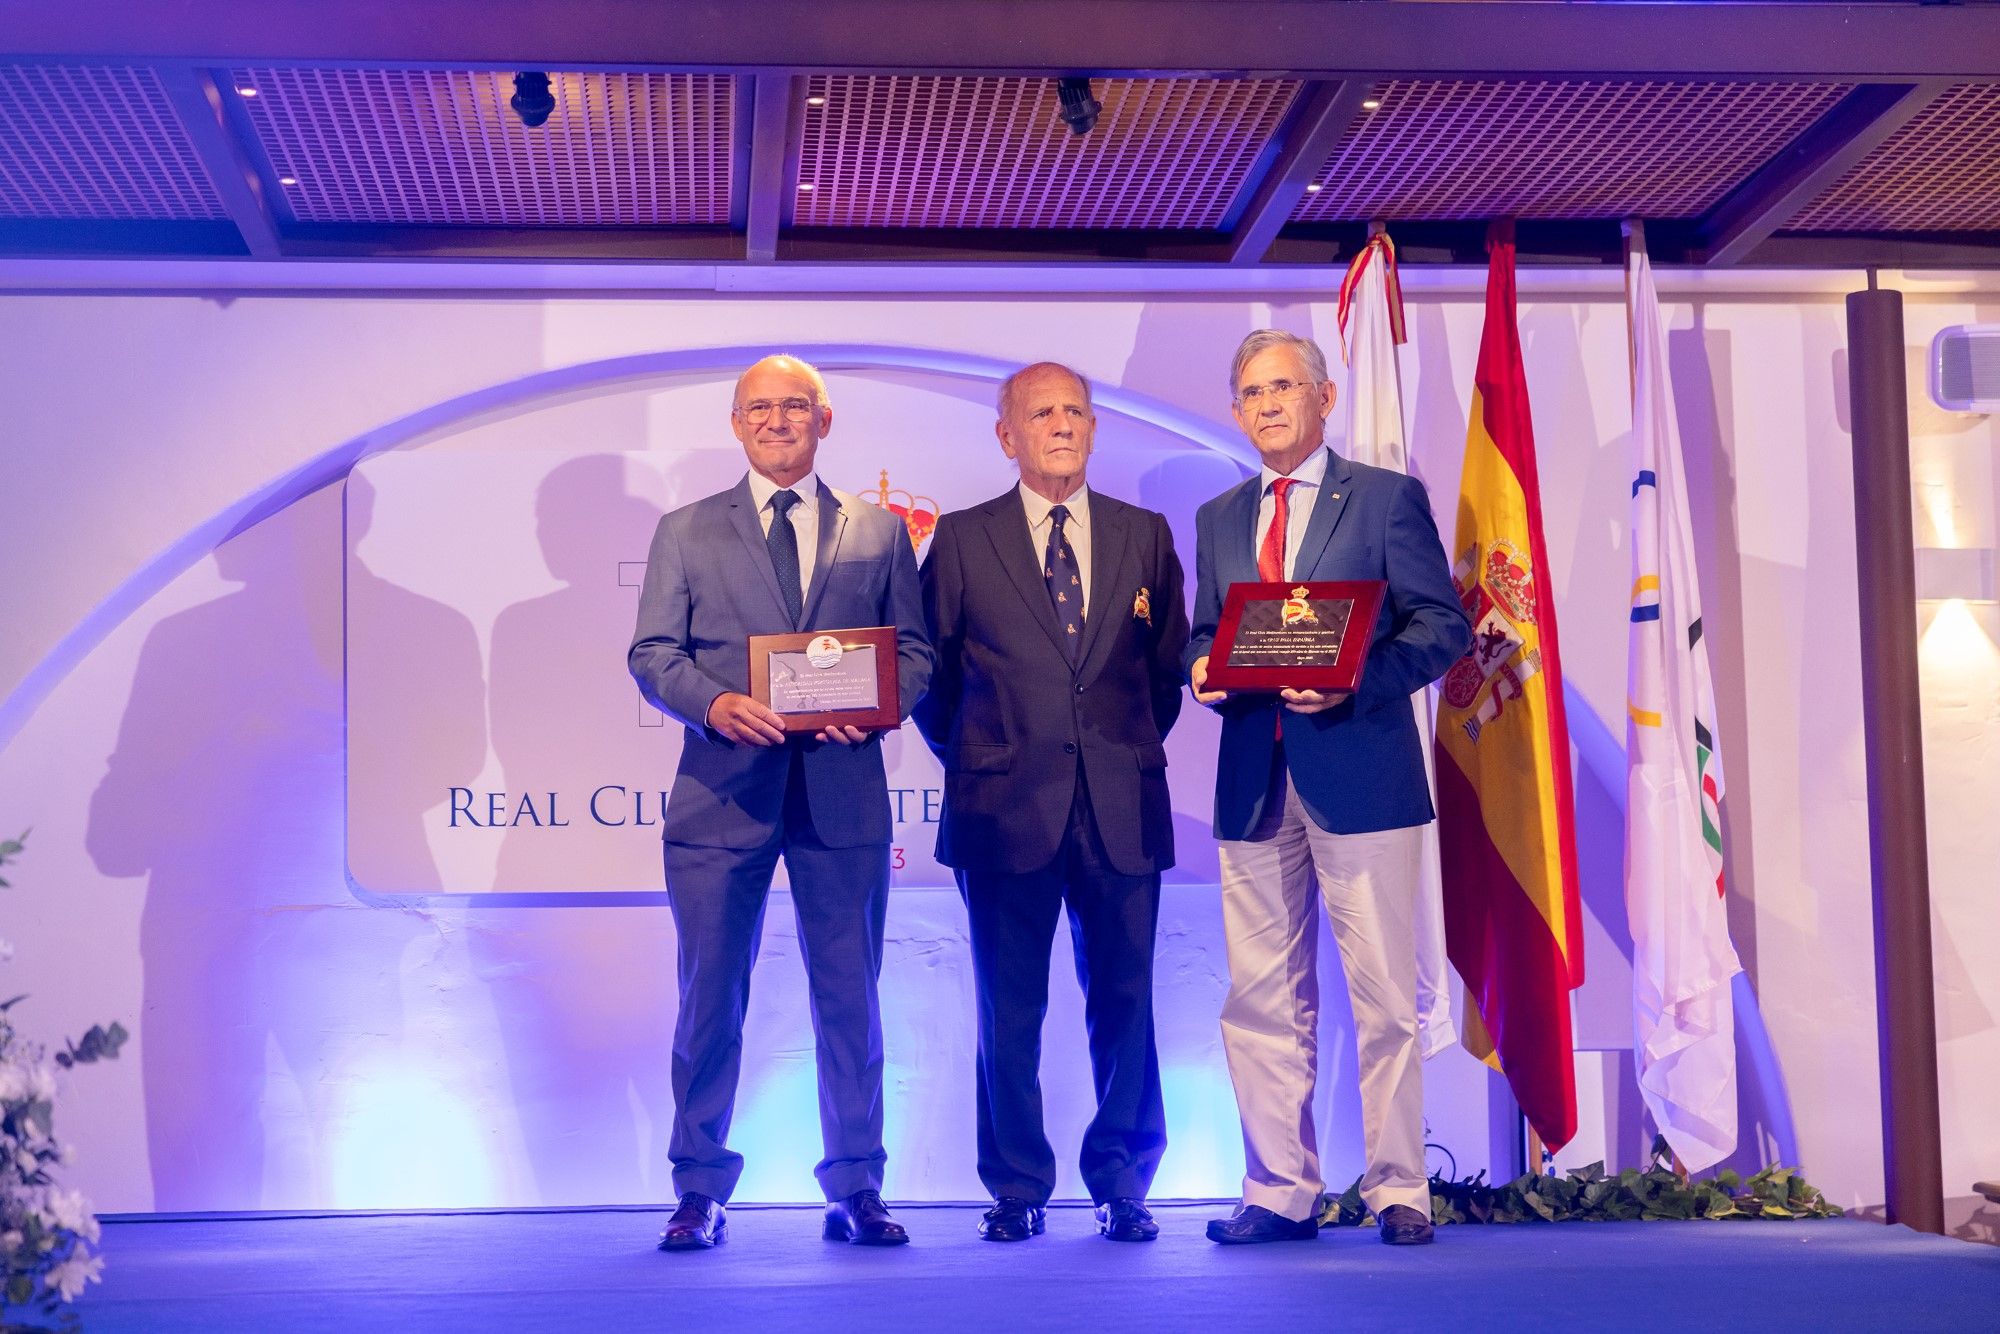 Así ha sido la gala del Real Club Mediterráneo por su 150 aniversario